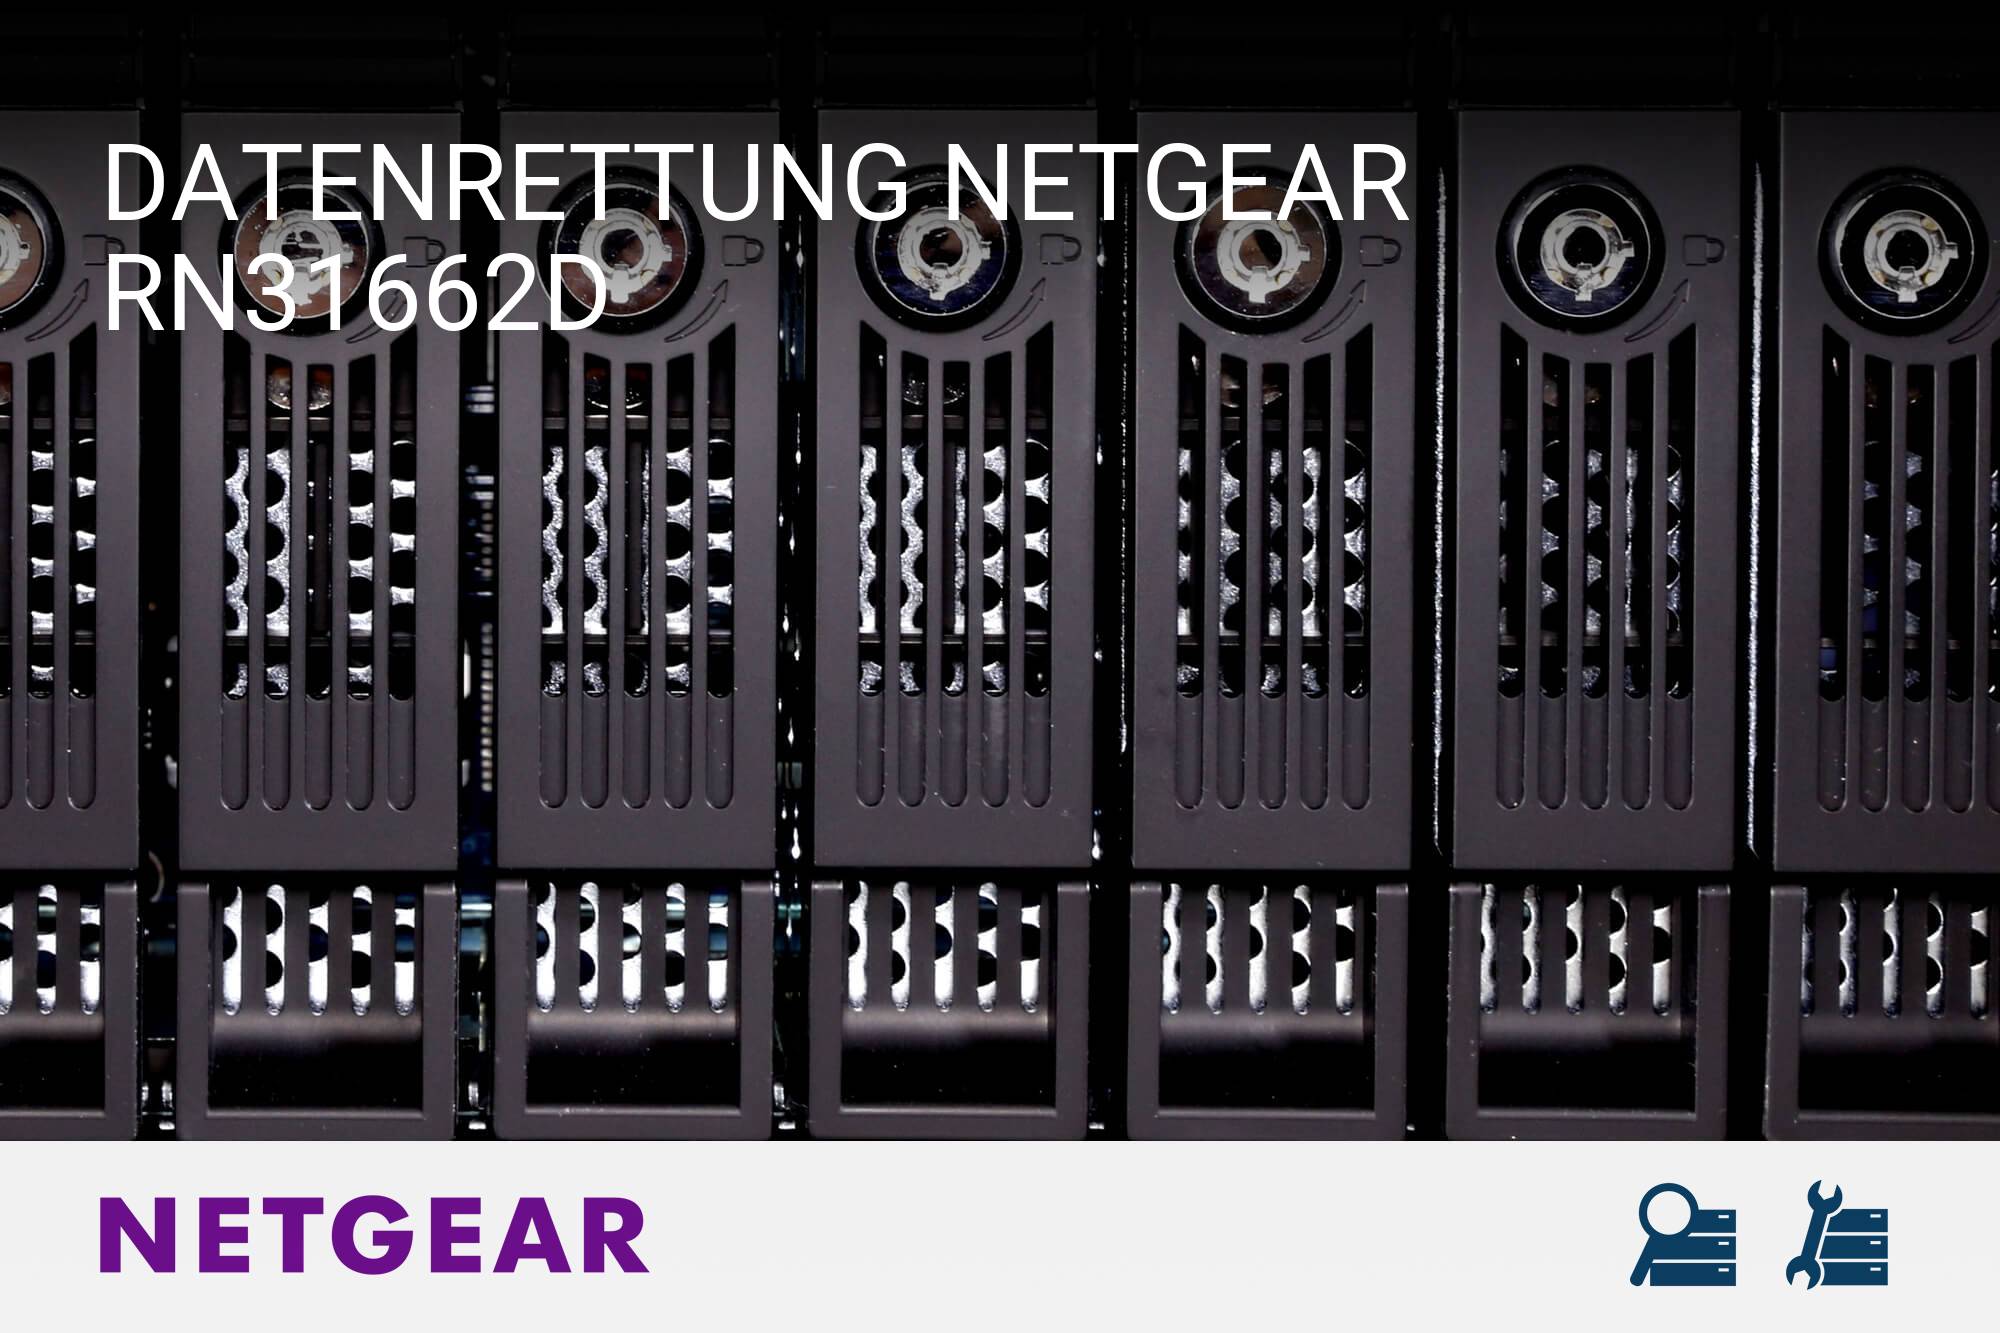 Netgear RN31662D